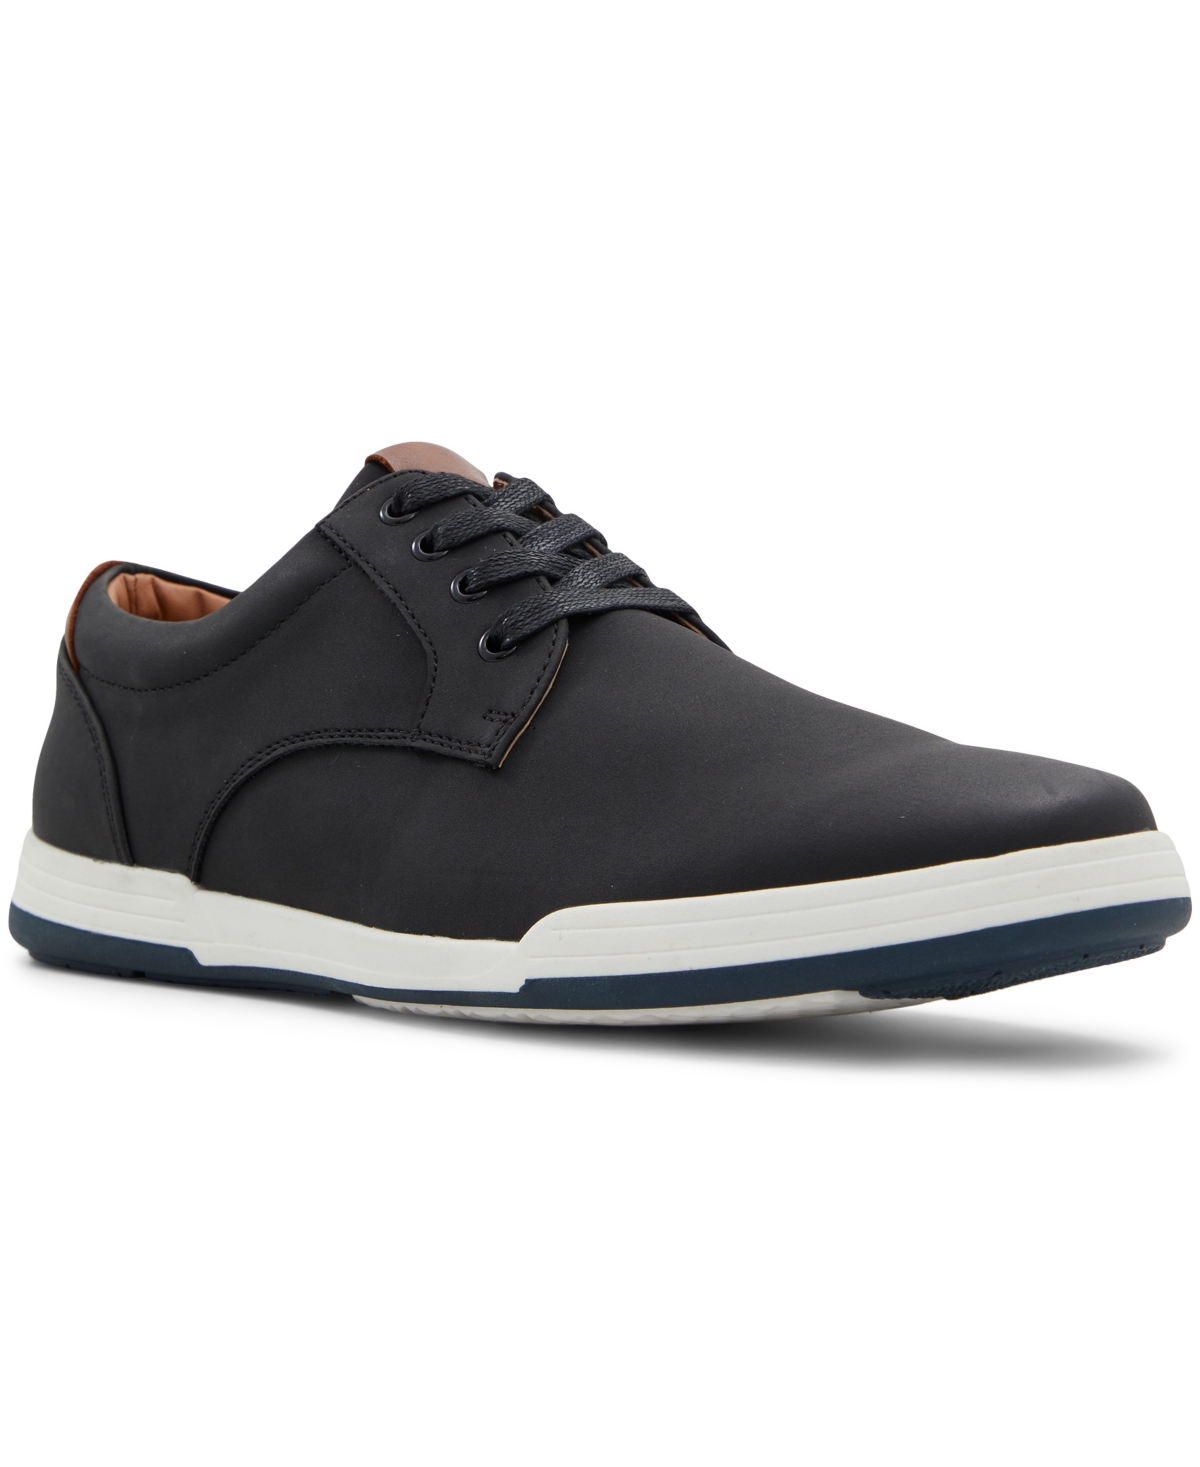 Men's Tureaux Casual Shoes - Black